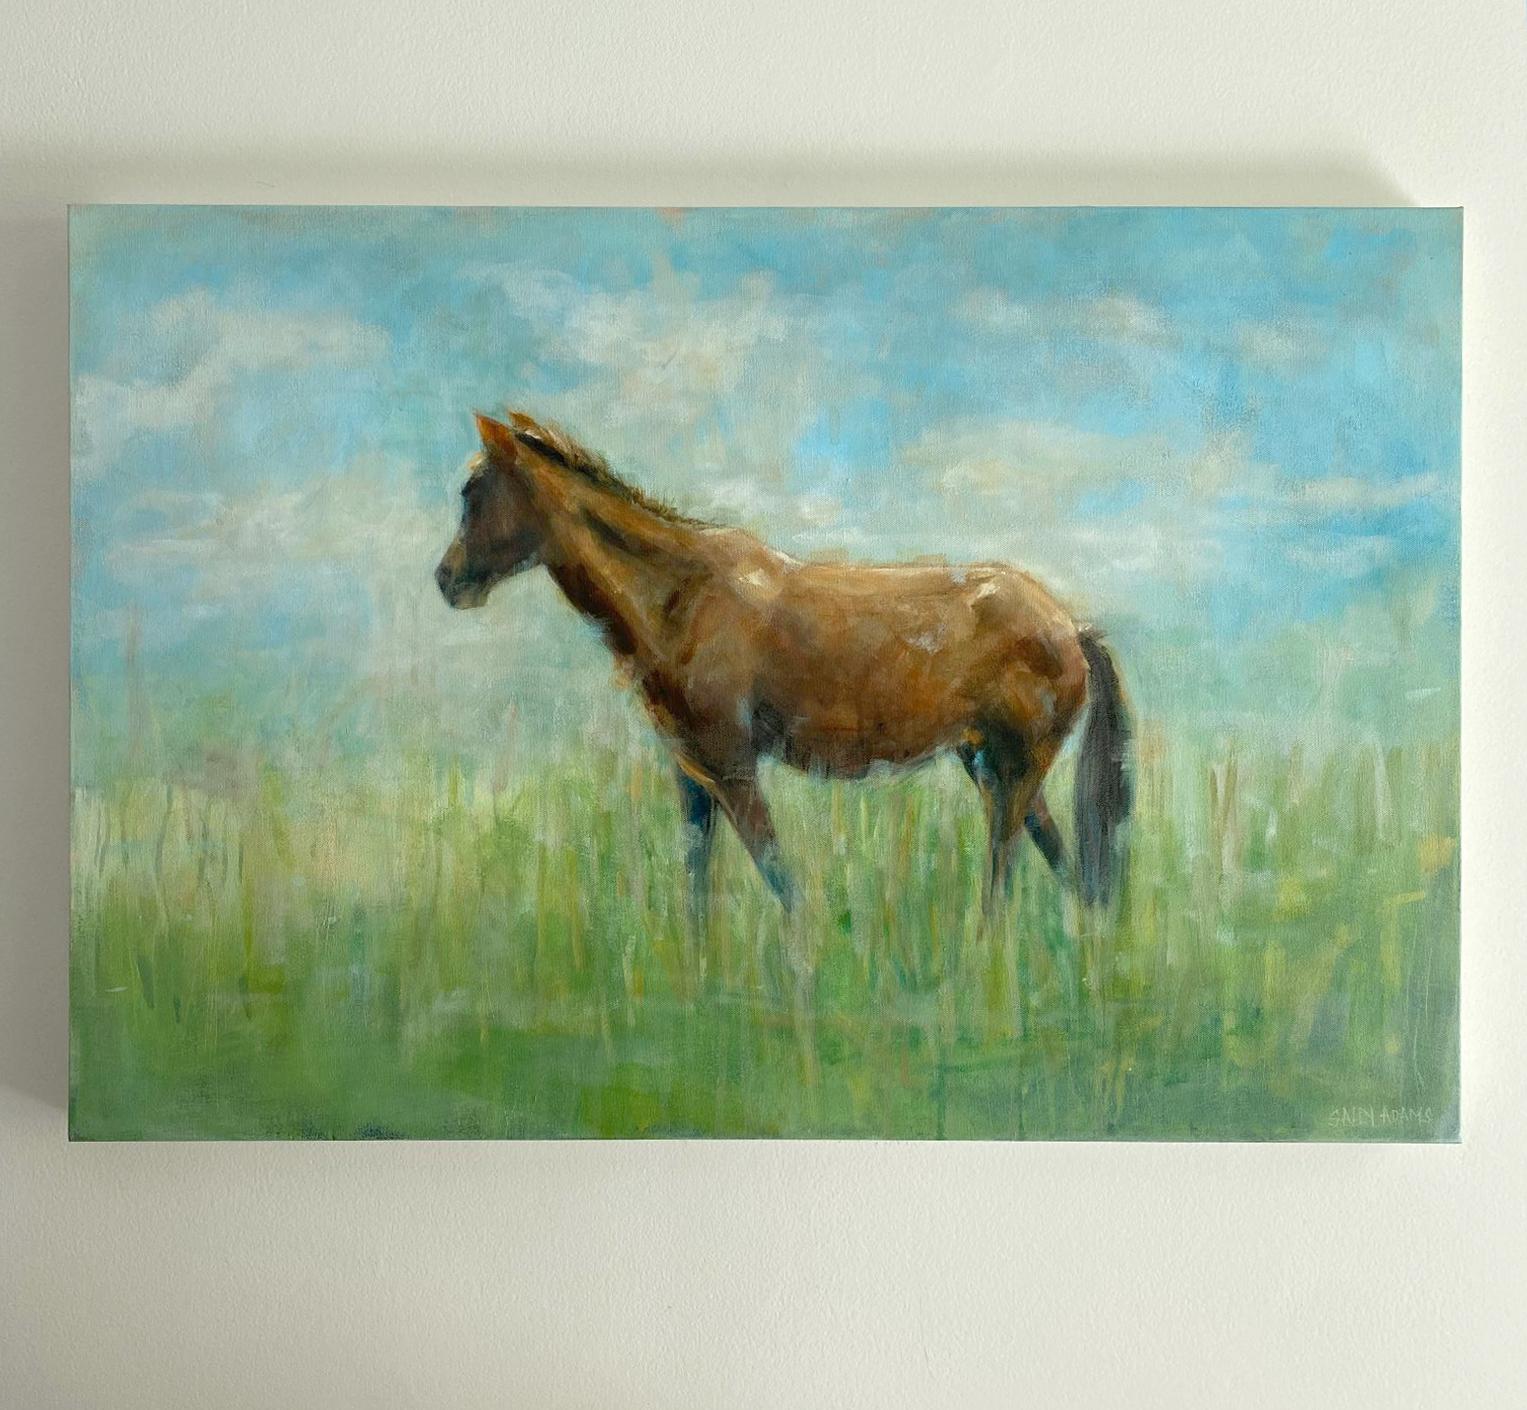 <p>Commentaires de l'artiste<br>L'artiste Sally Adams peint un cheval brun solitaire dans un paysage verdoyant. Elle s'inspire des poneys sauvages des îles au large de la Caroline du Sud. 